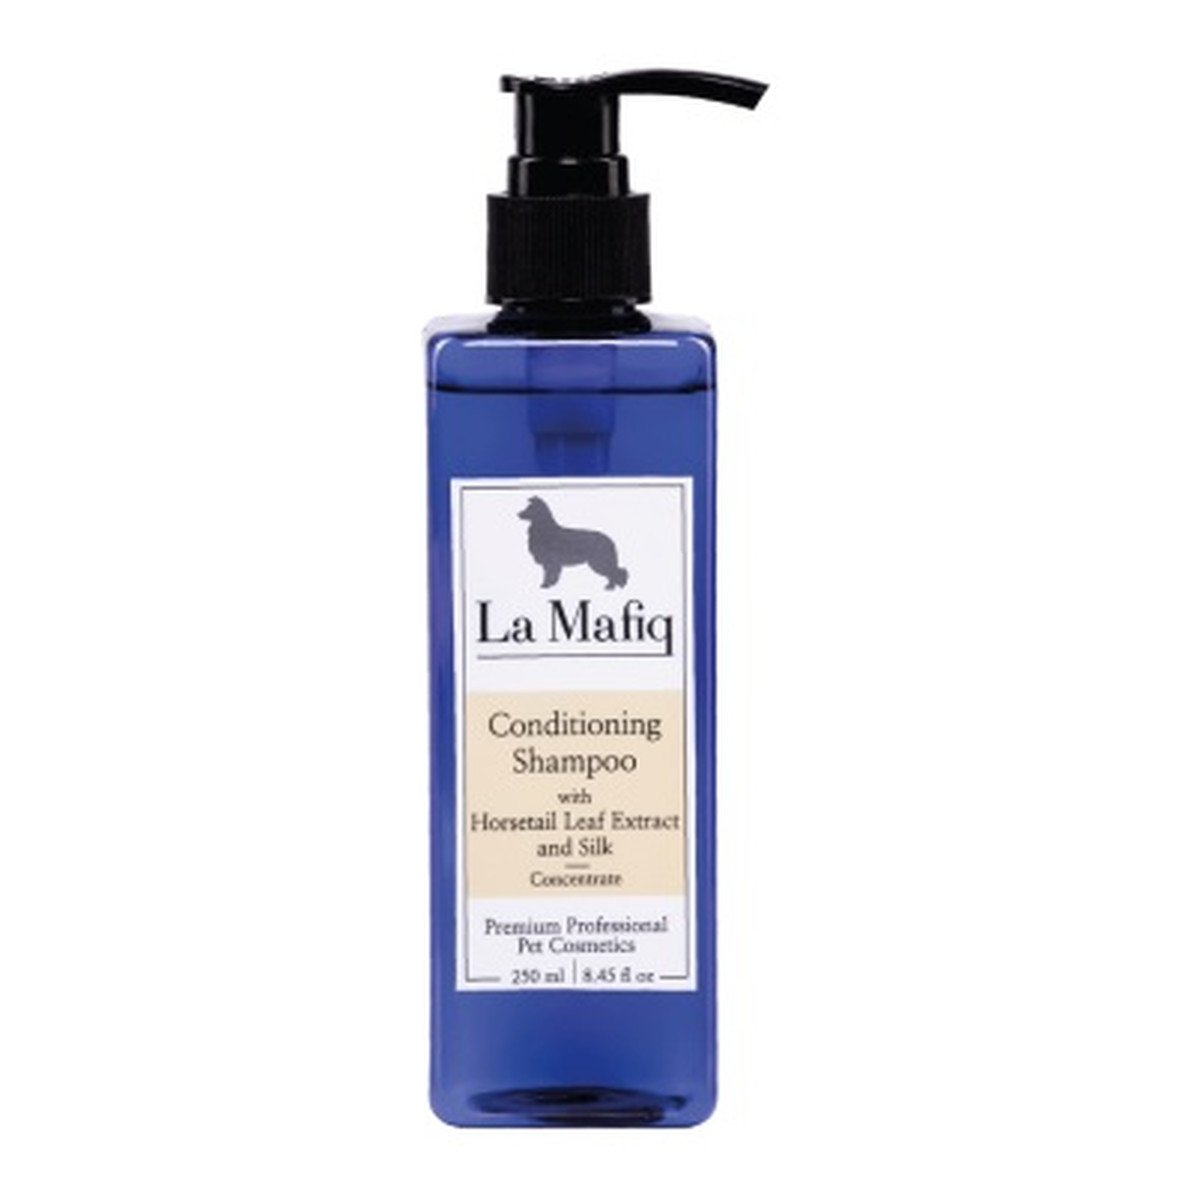 La Mafiq Conditioning Shampoo szampon do sierści zwierząt odżywiający z ekstraktem z liści skrzypu polnego i jedwabiu - koncentrat 250ml